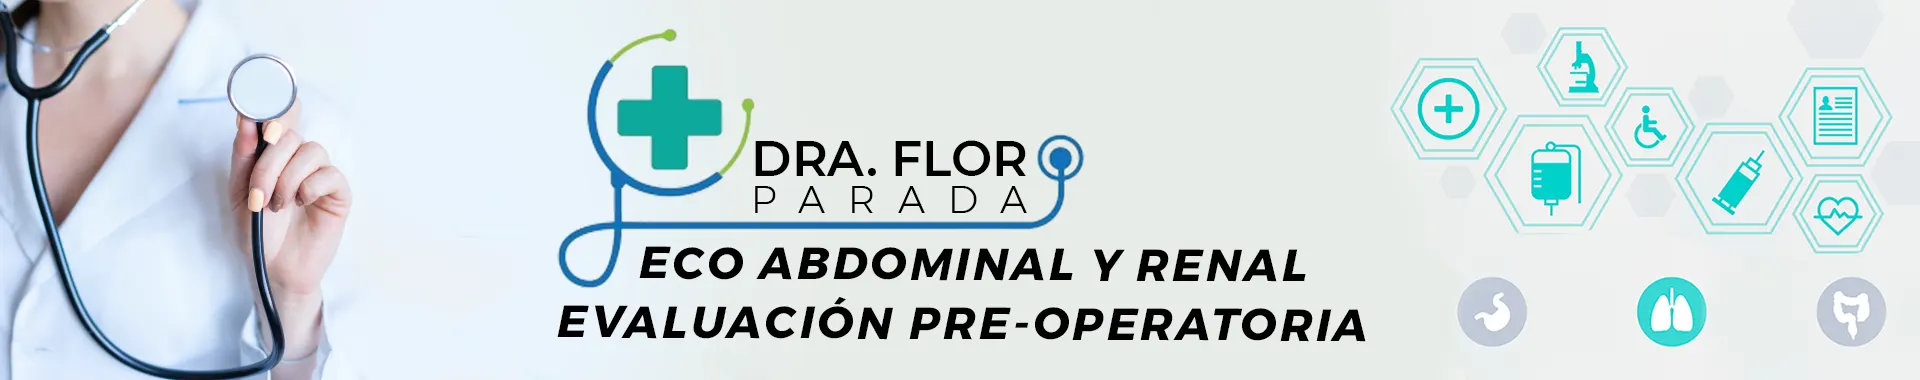 Imagen 2 del perfil de Dra. Flor Parada